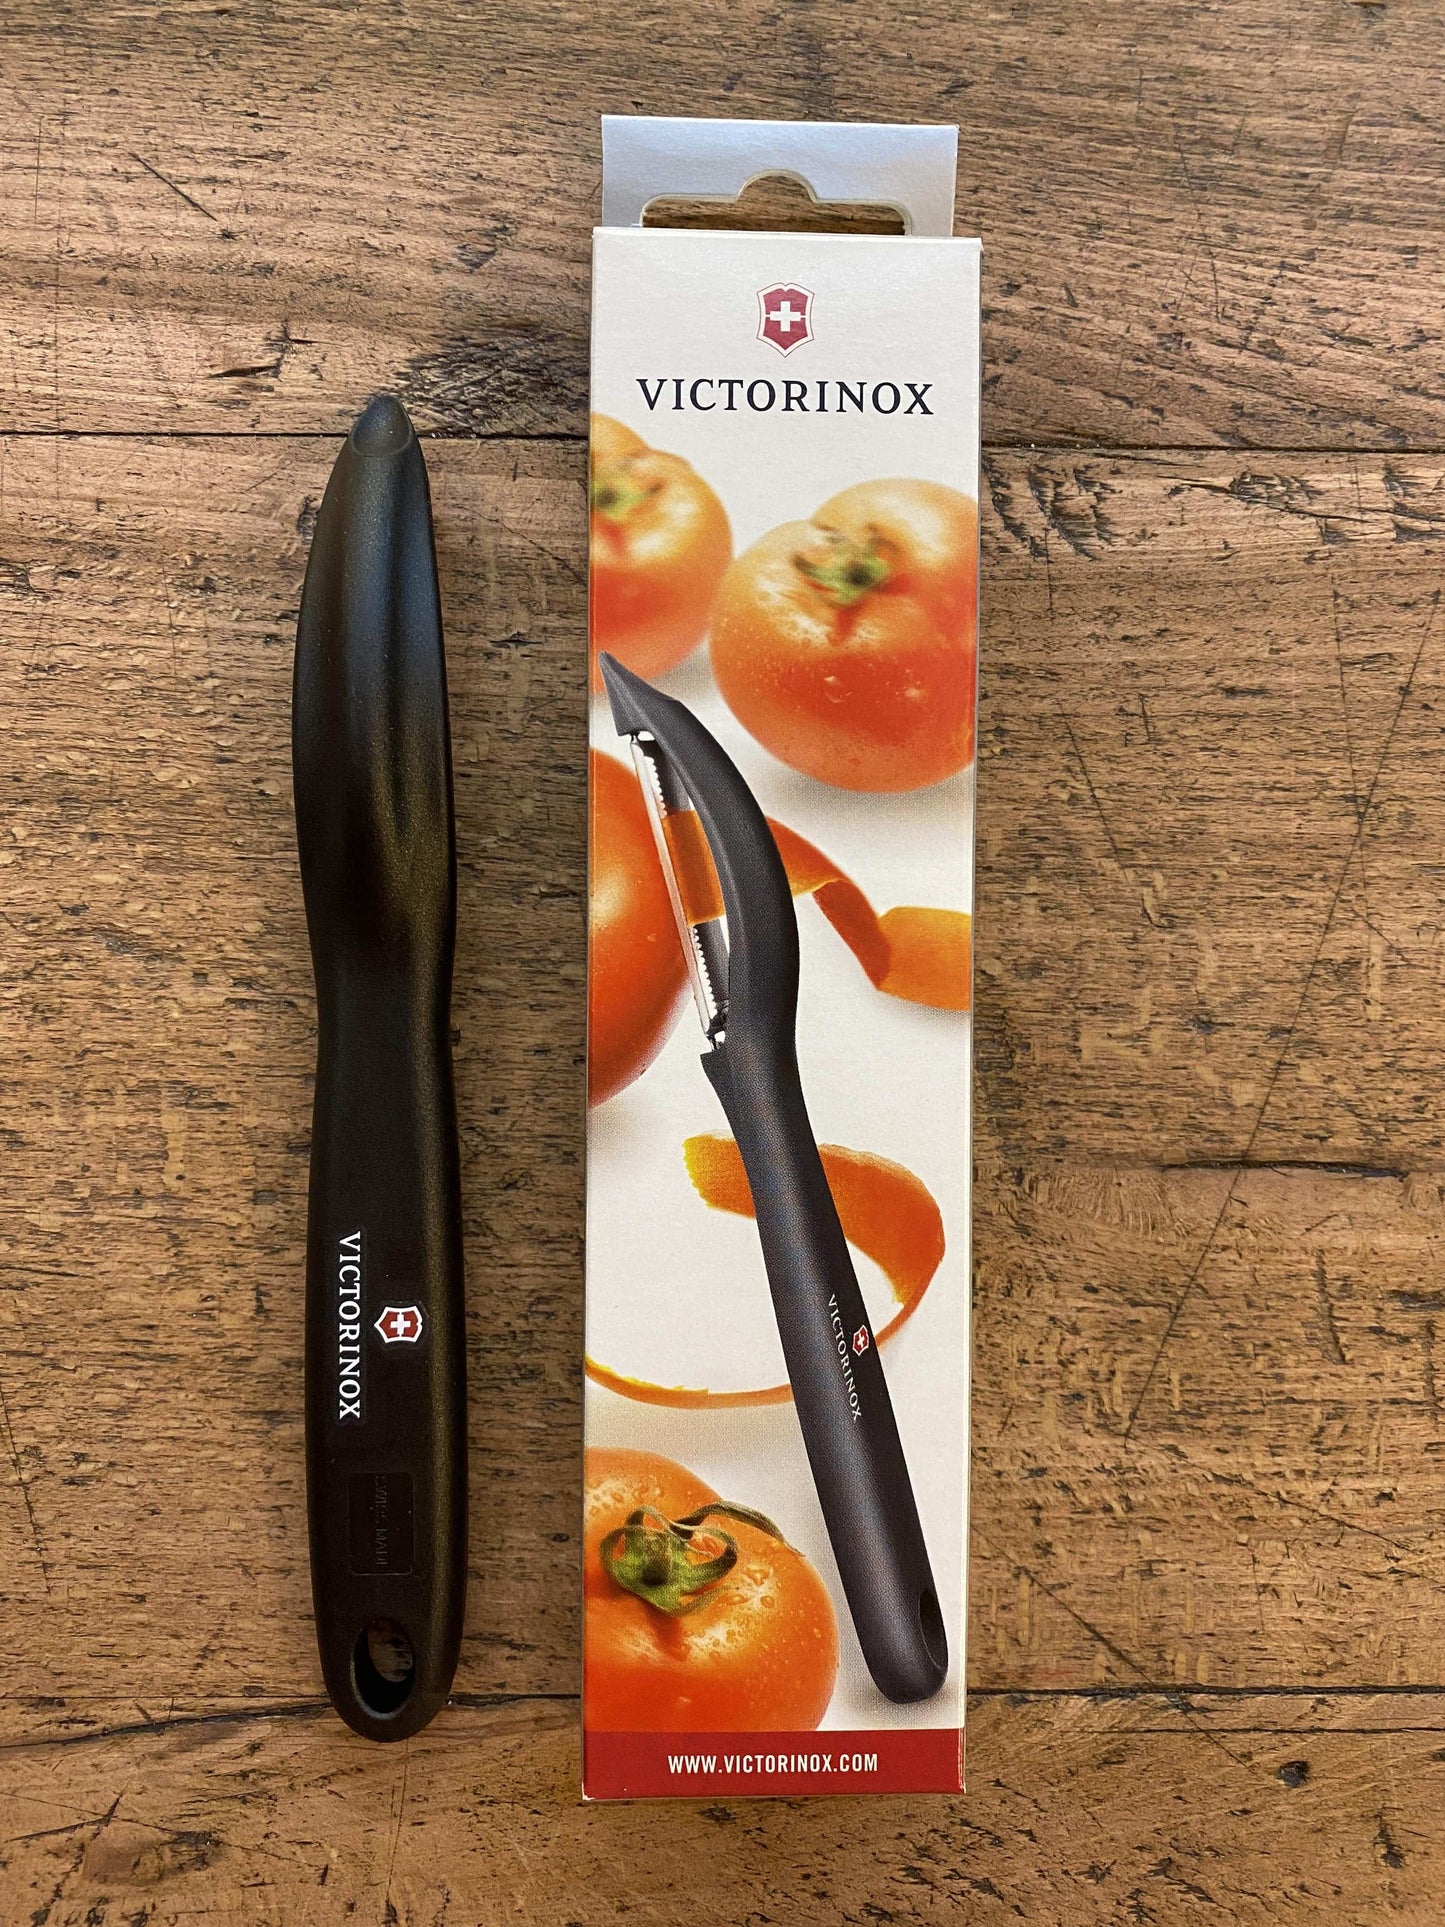 Victorinox tomato peeler